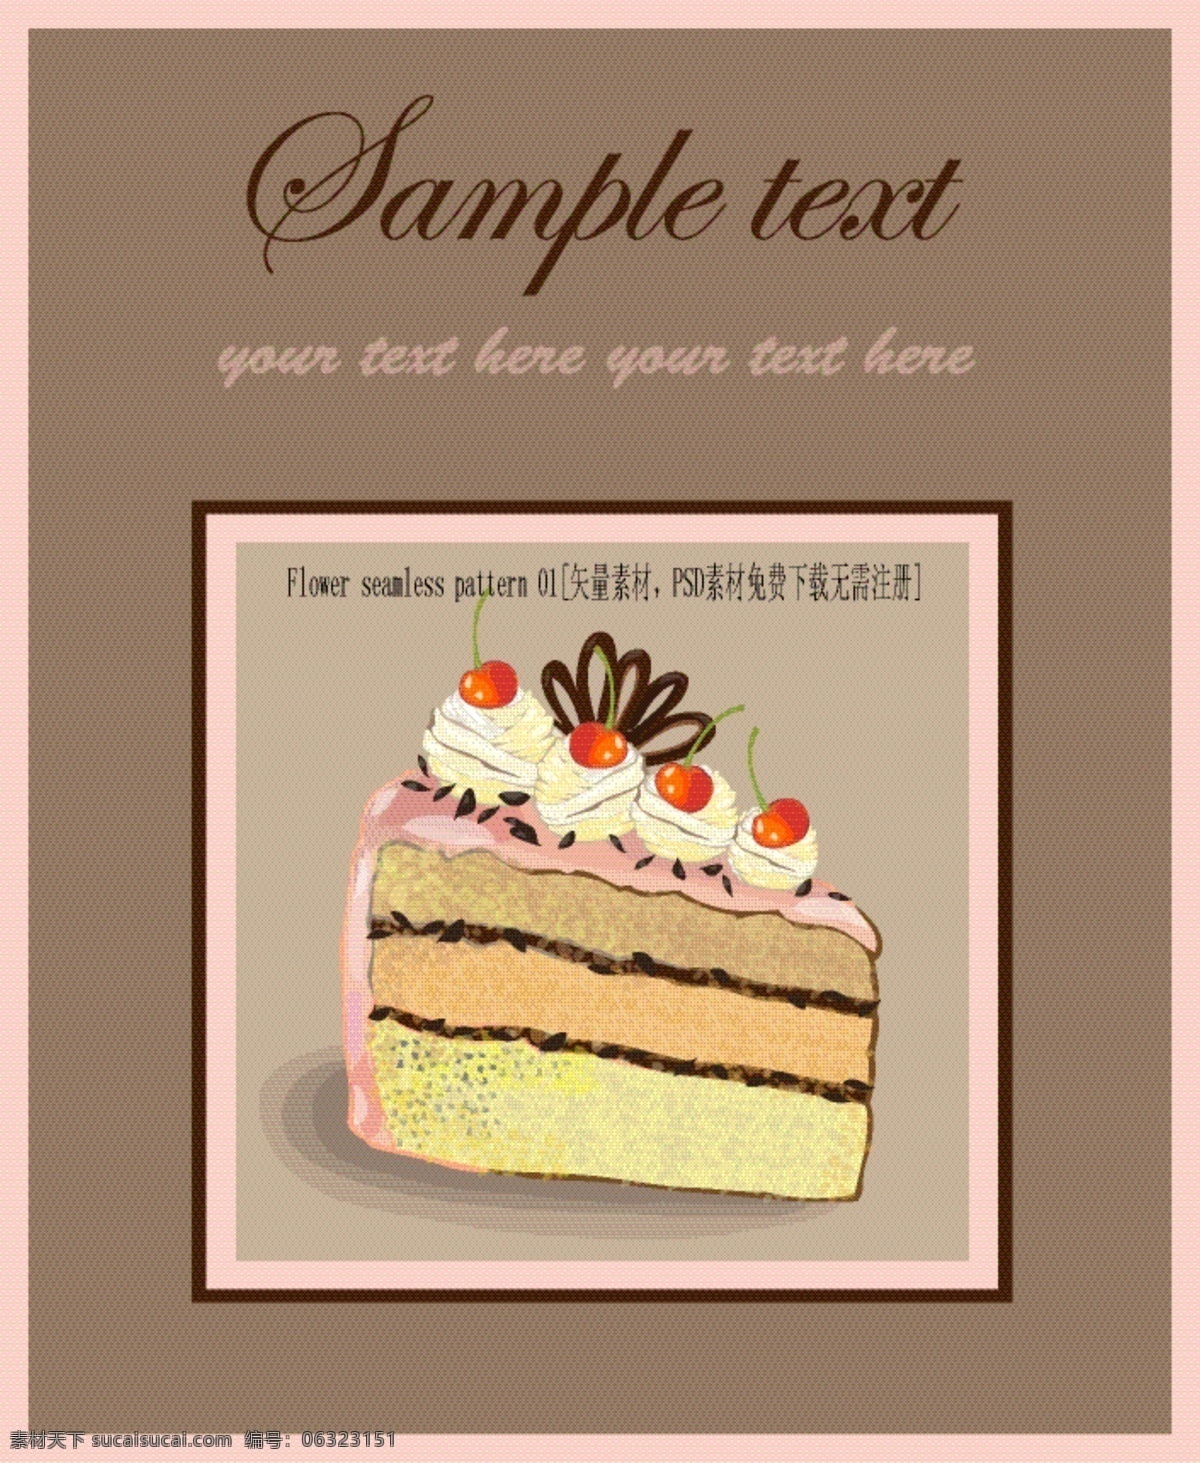 矢量 精致 糕点 封面设计 菜单 巧克力 西式糕点 新鲜水果 夹心蛋糕 奶油 蛋糕 矢量图